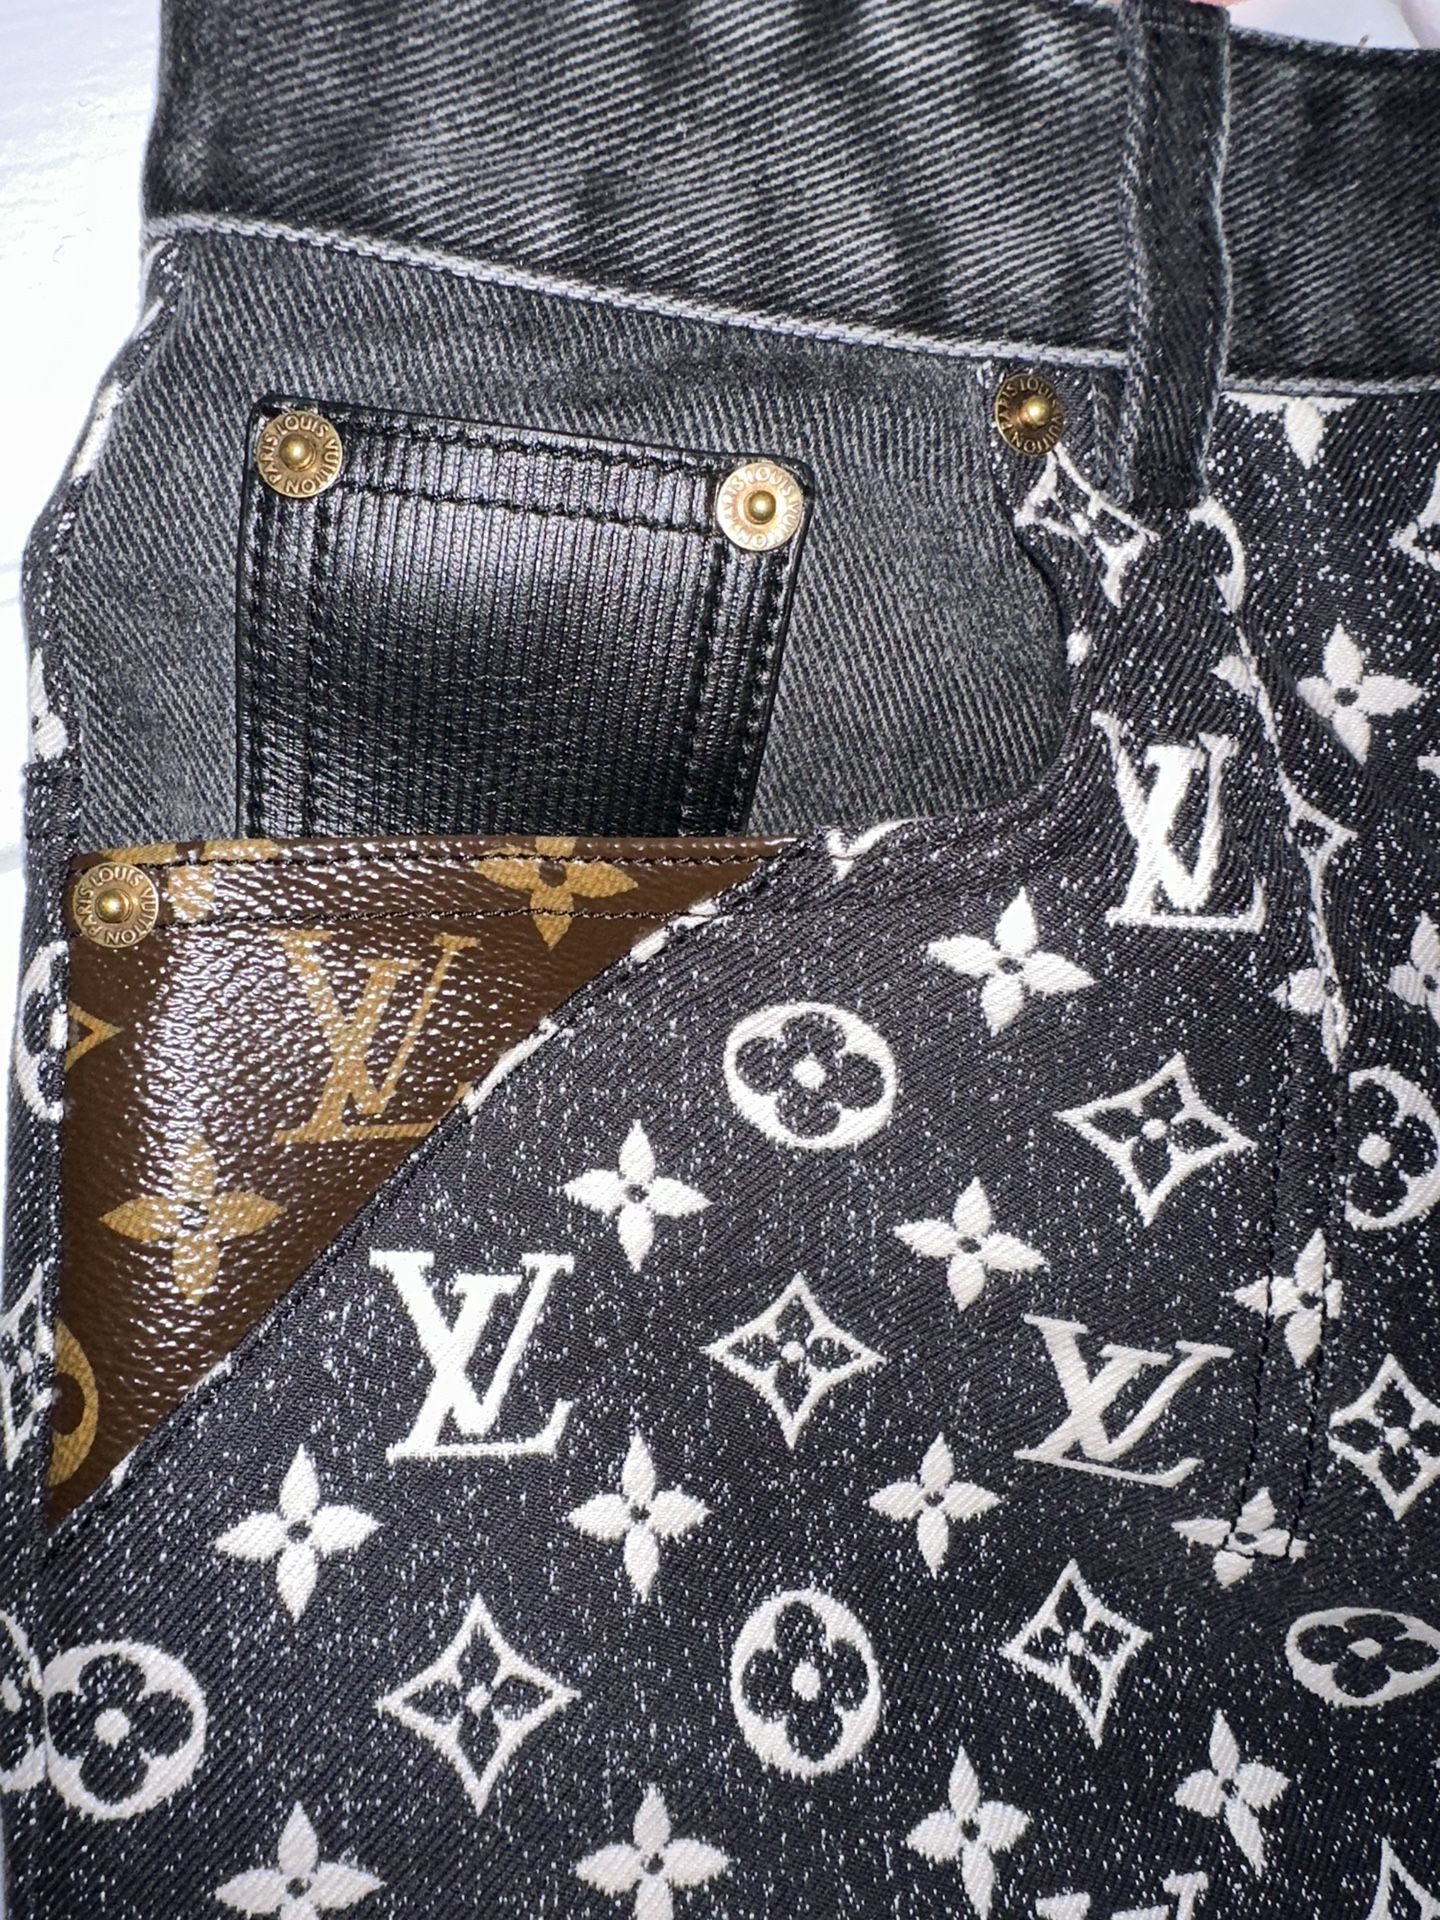 Louis Vuitton Pinstripe Denim Jeans Washed Indigo. Size 36